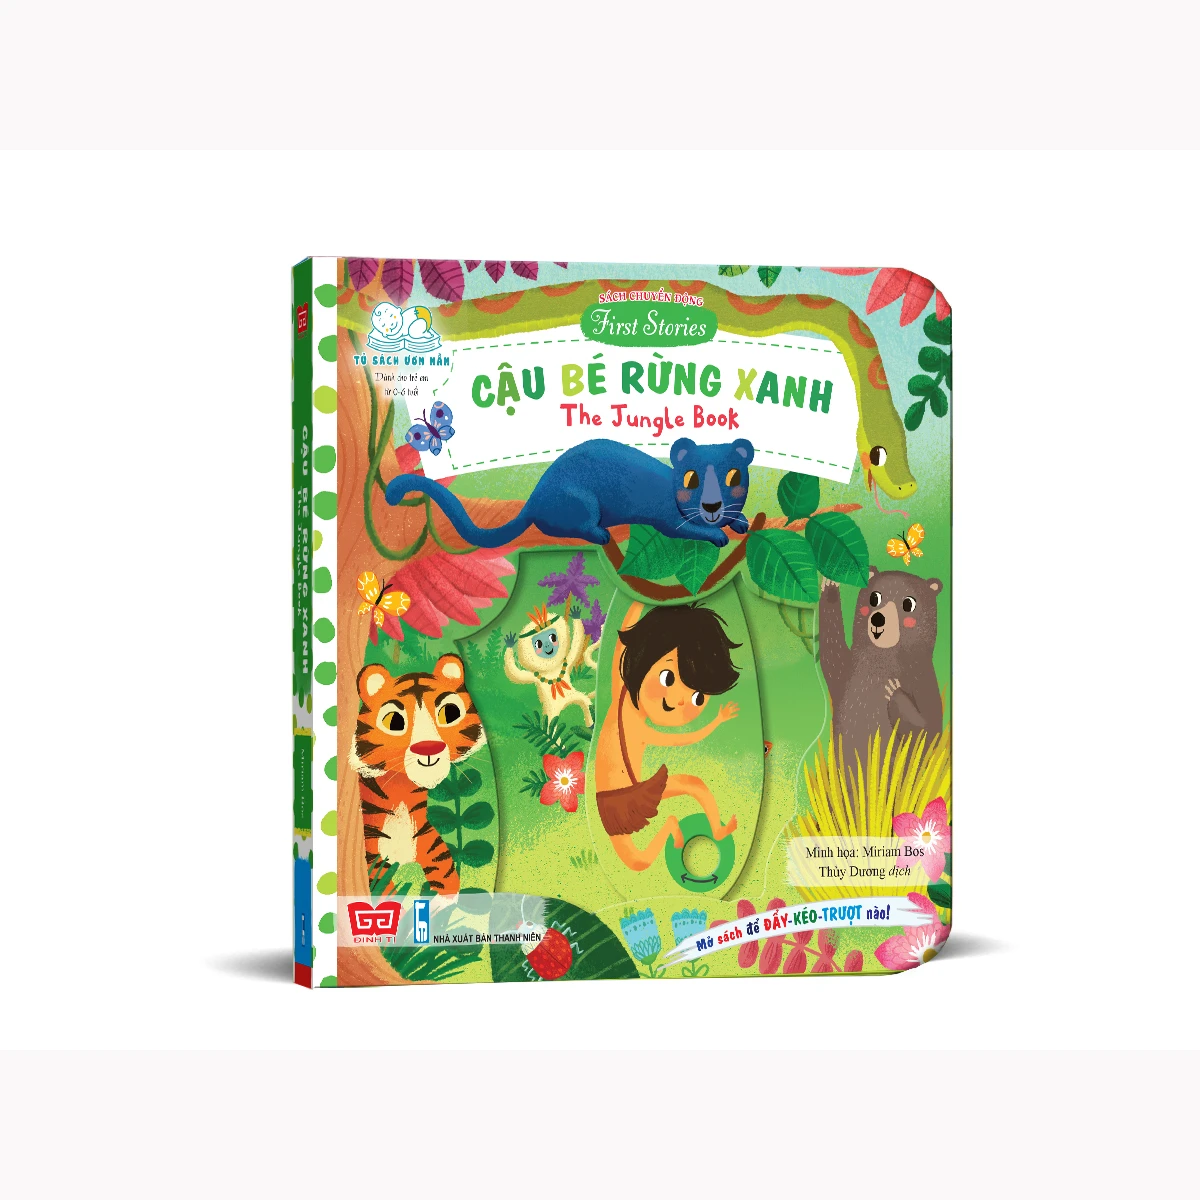 Sách tương tác - Sách chuyển động - First stories - The Jungle book - Cậu bé rừng xanh